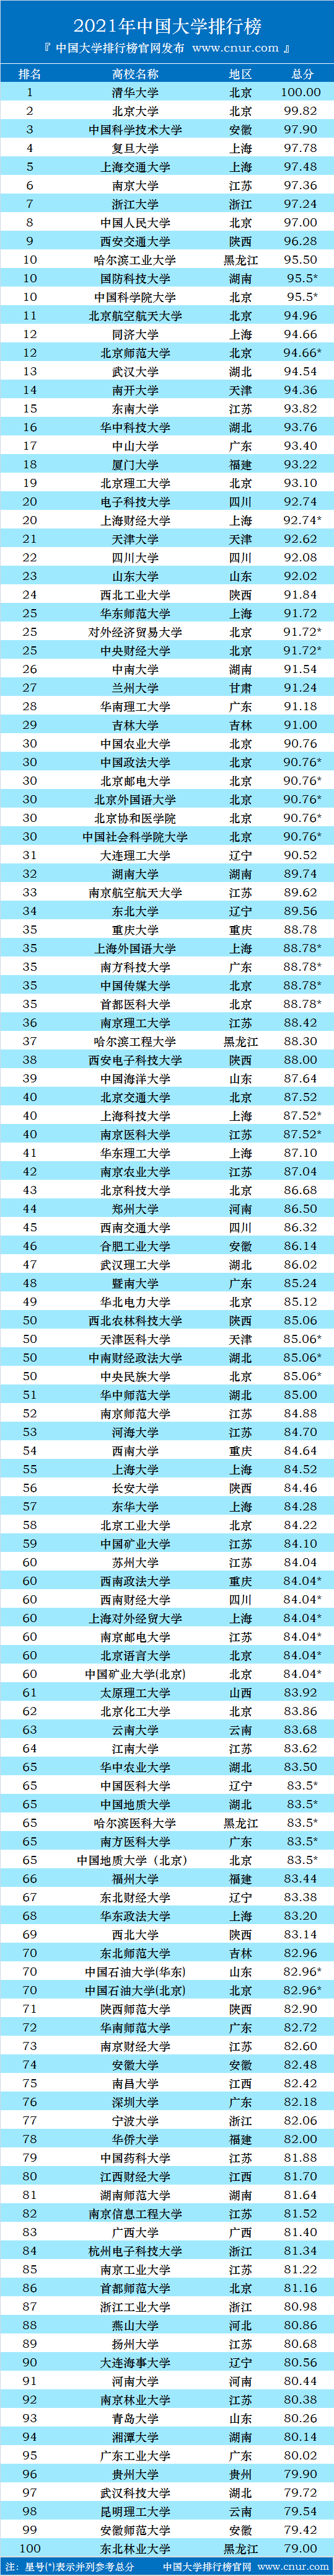 湖南大学排行榜_2021年中国大学排行榜出炉,清华第一,北大第二,湖南5大学入榜